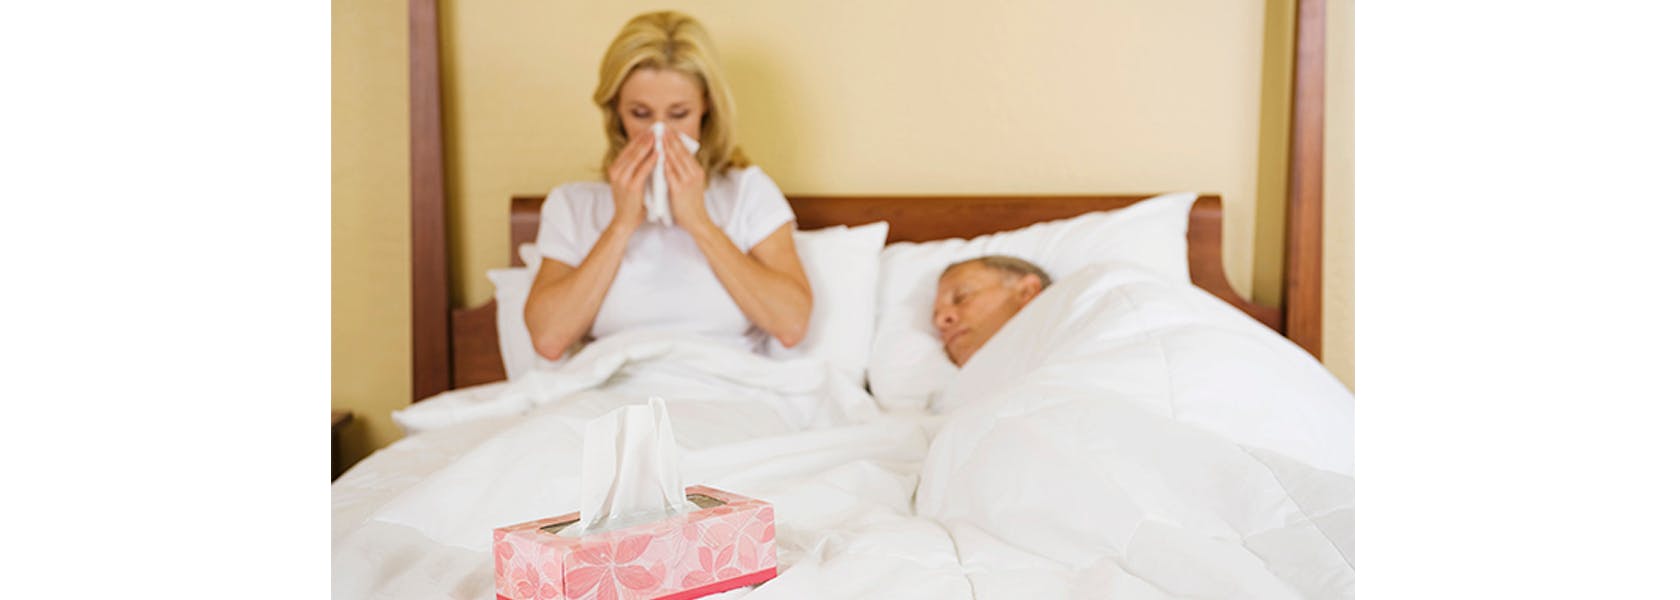 Pareja de adultos son sintomas gripales descansando en cama.